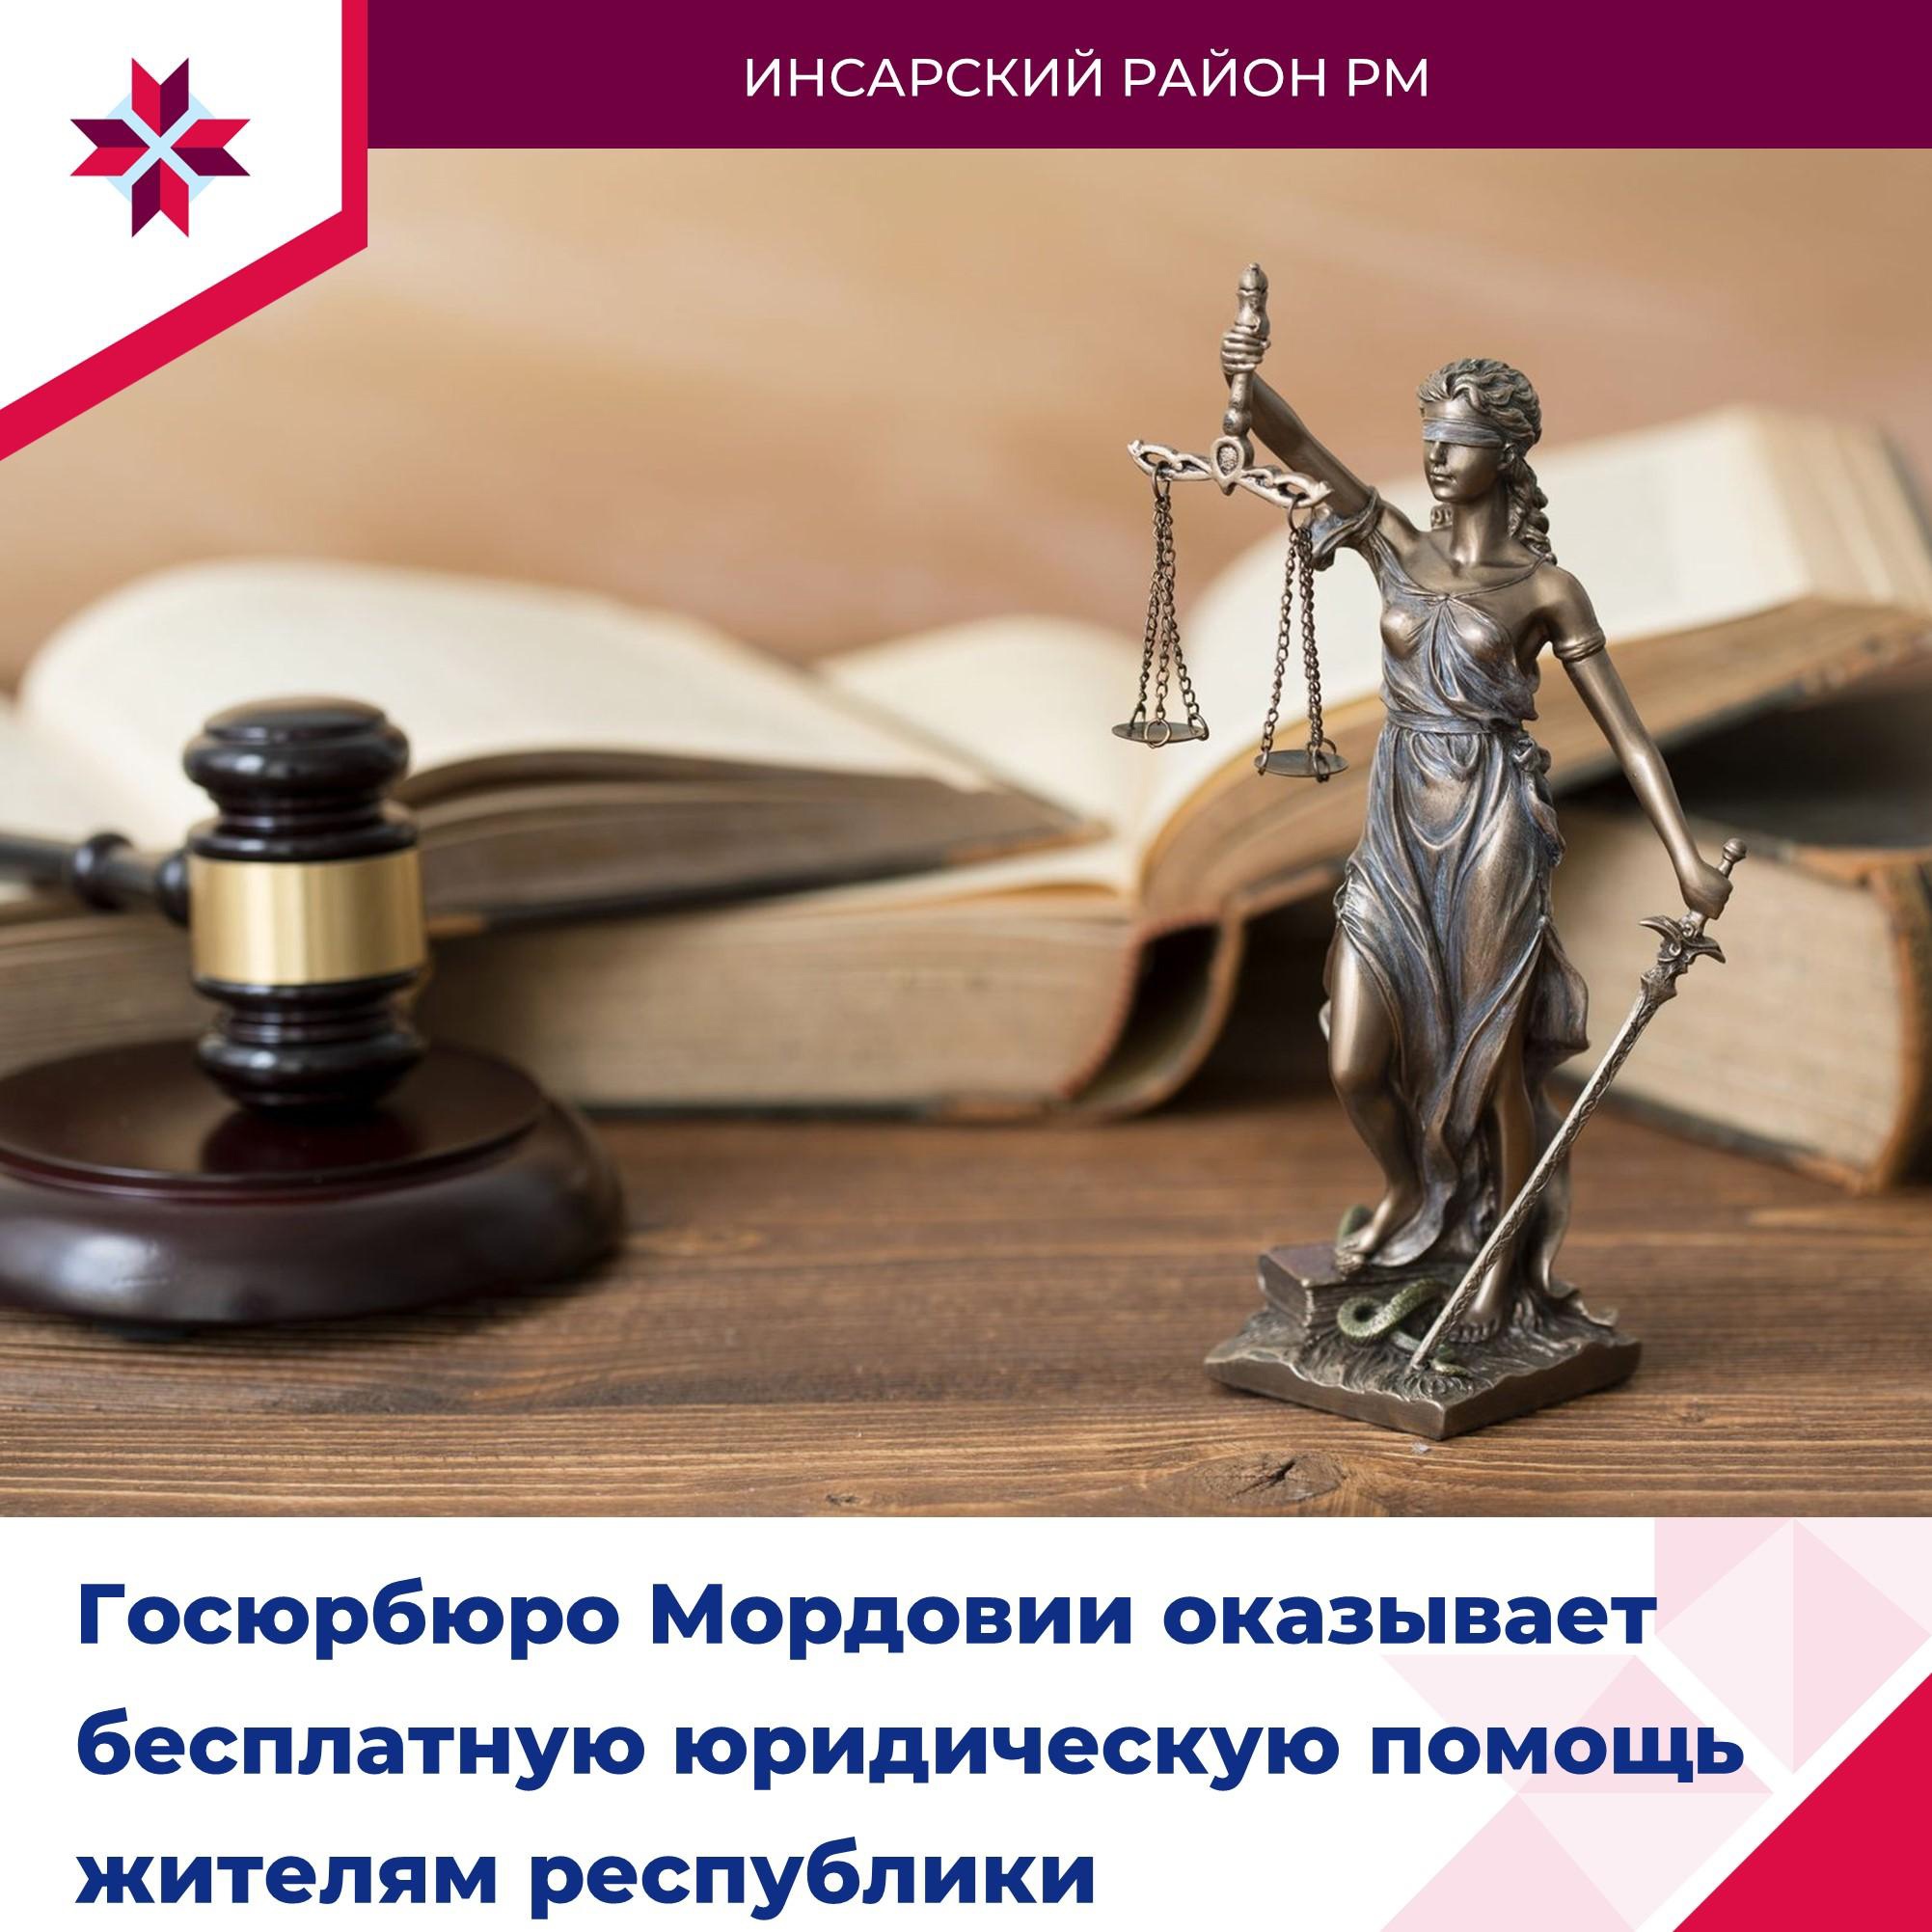 Государственное юридическое бюро, подведомственное Минюсту Республики Мордовия создано для оказания бесплатной юридической помощи.